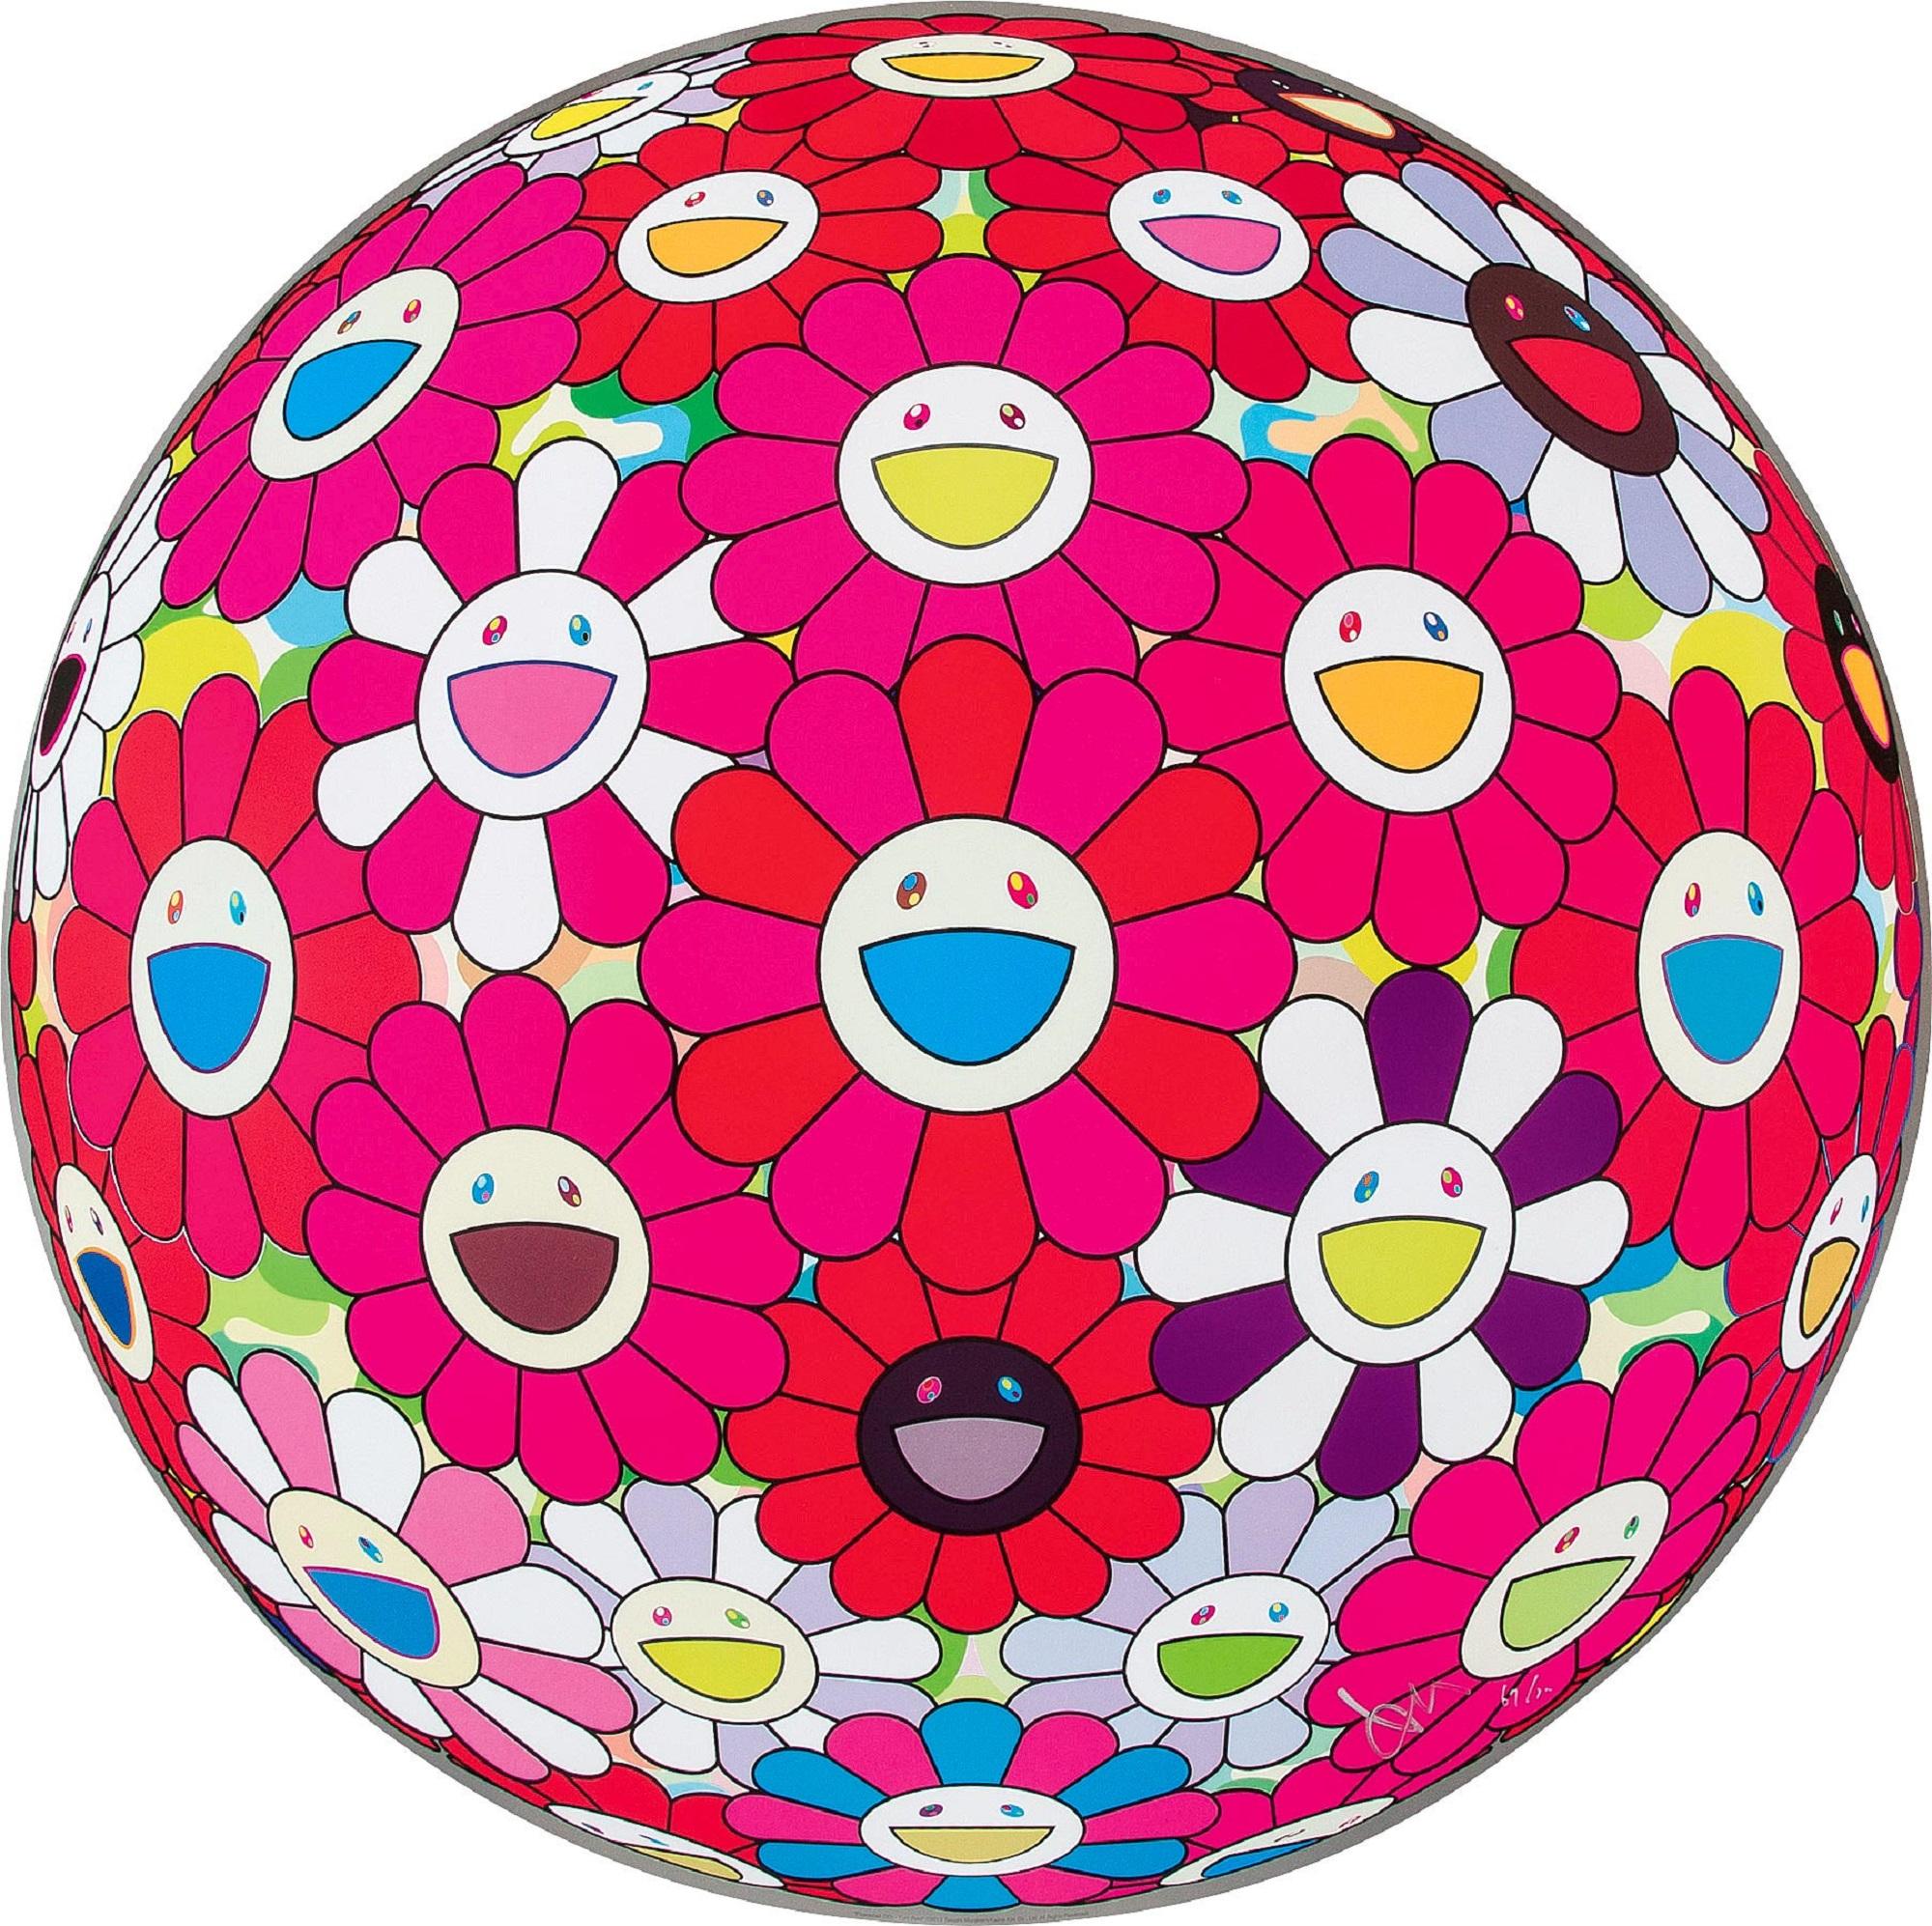 Takashi Murakami Figurative Print – Flowerball (3D) - Werde rot! Limitierte Auflage (Druck) Murakami signiert und nummeriert